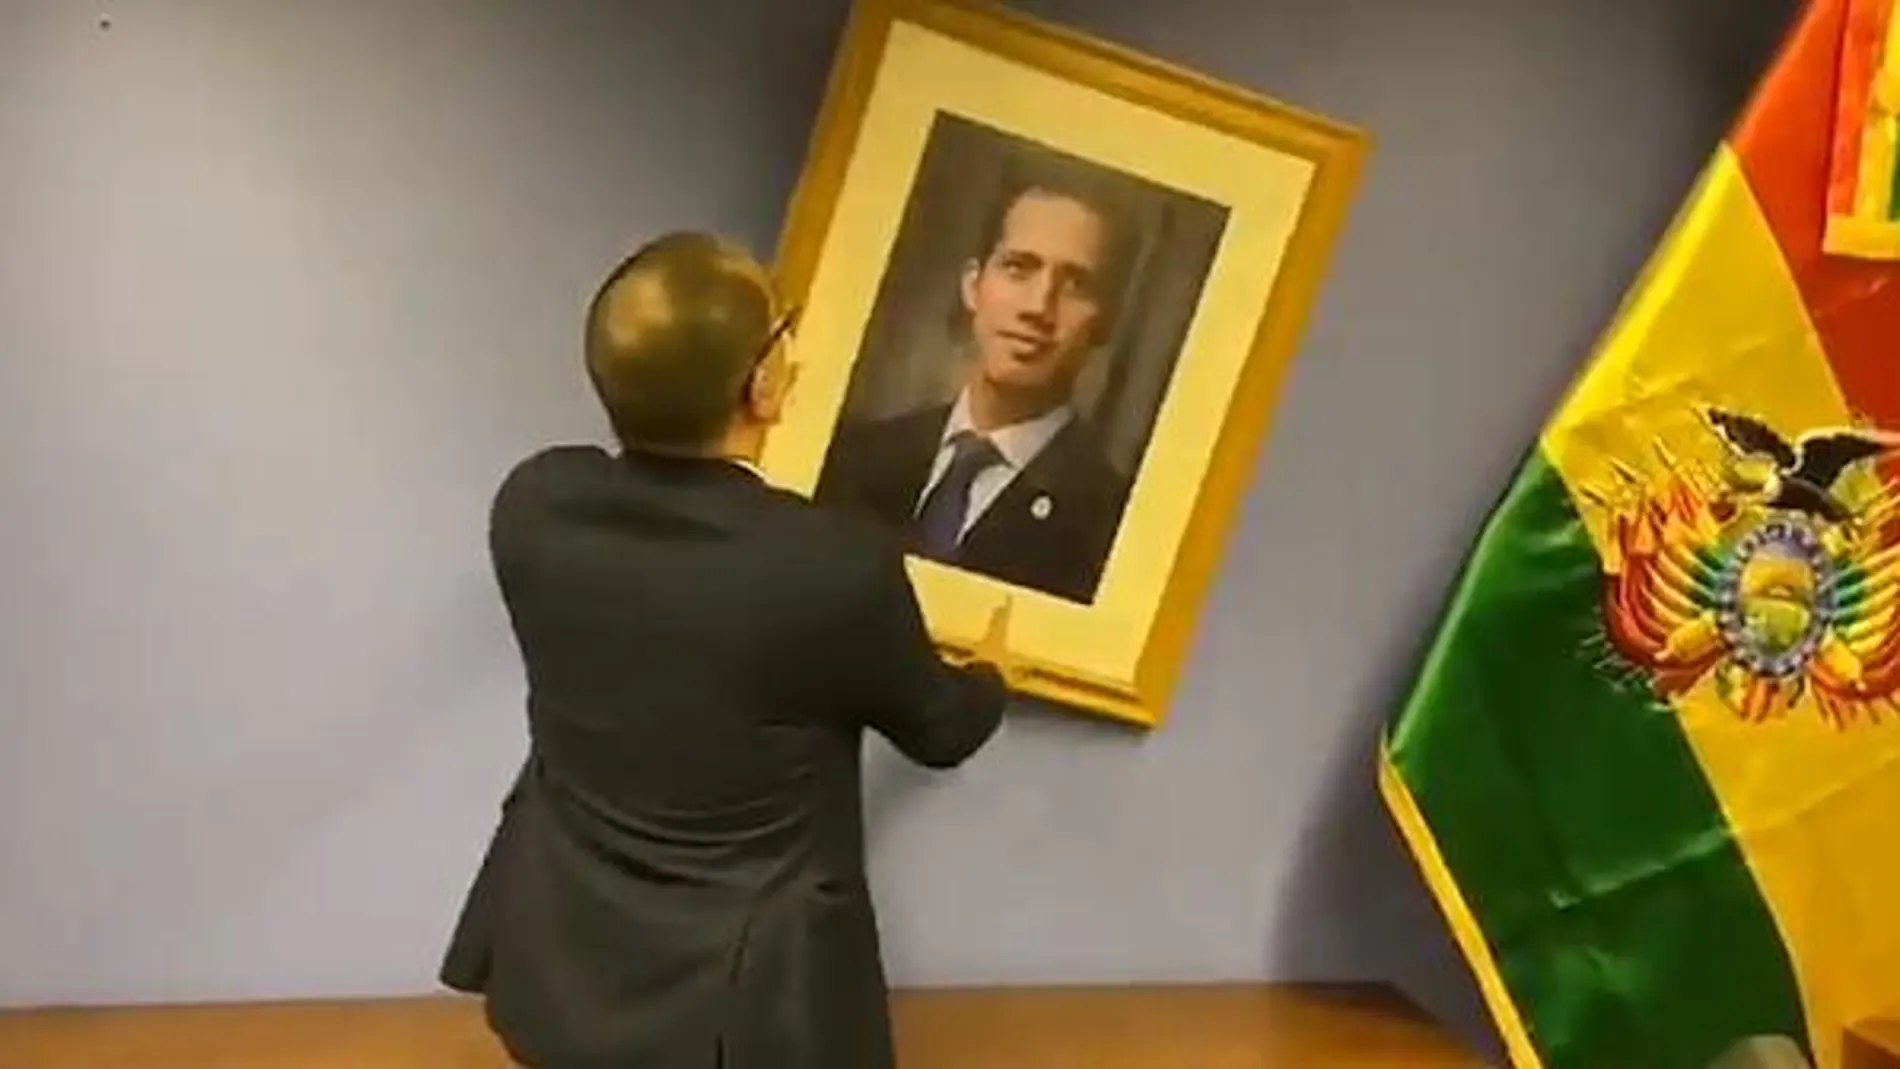 El ministro Jorge Arreaza retira el retrato de Guaidó de la embajada de Bolivia